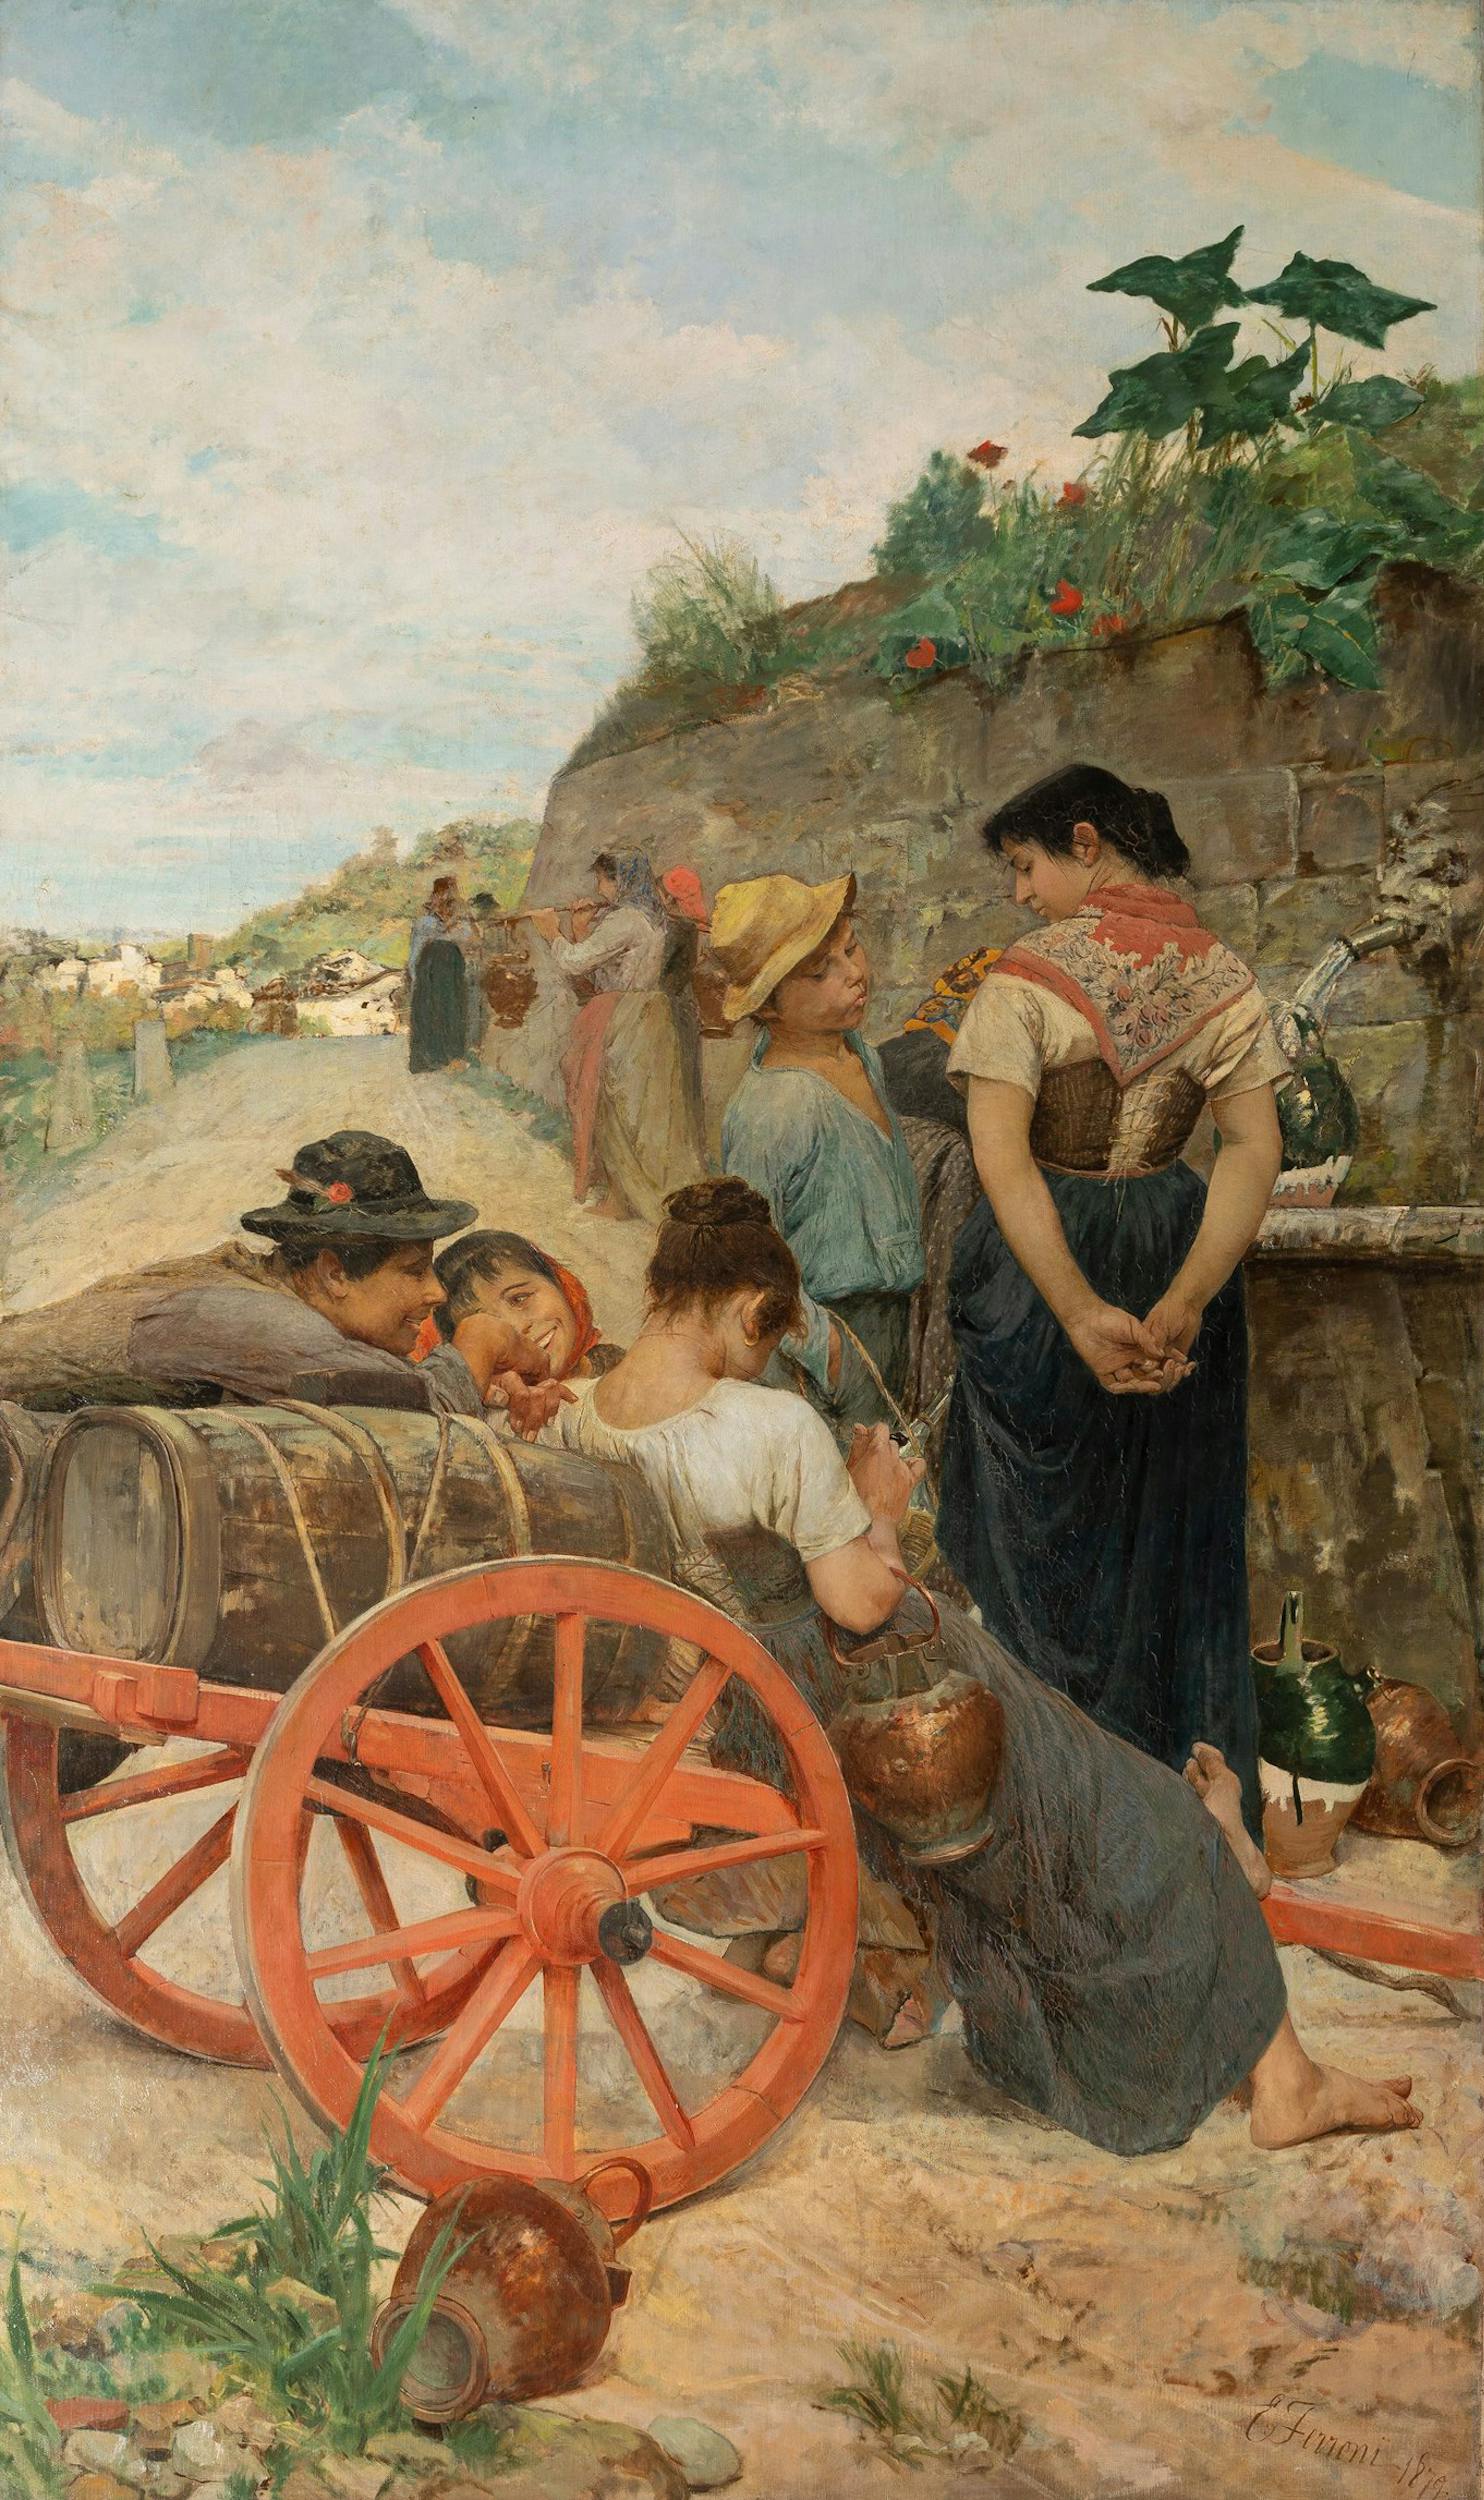 Egisto Ferroni (Lastra a Signa 1835 - 1912), Alla fontana, XIX secolo (1879), olio su tela. Firenze, Gallerie degli Uffizi, Galleria d’Arte Moderna